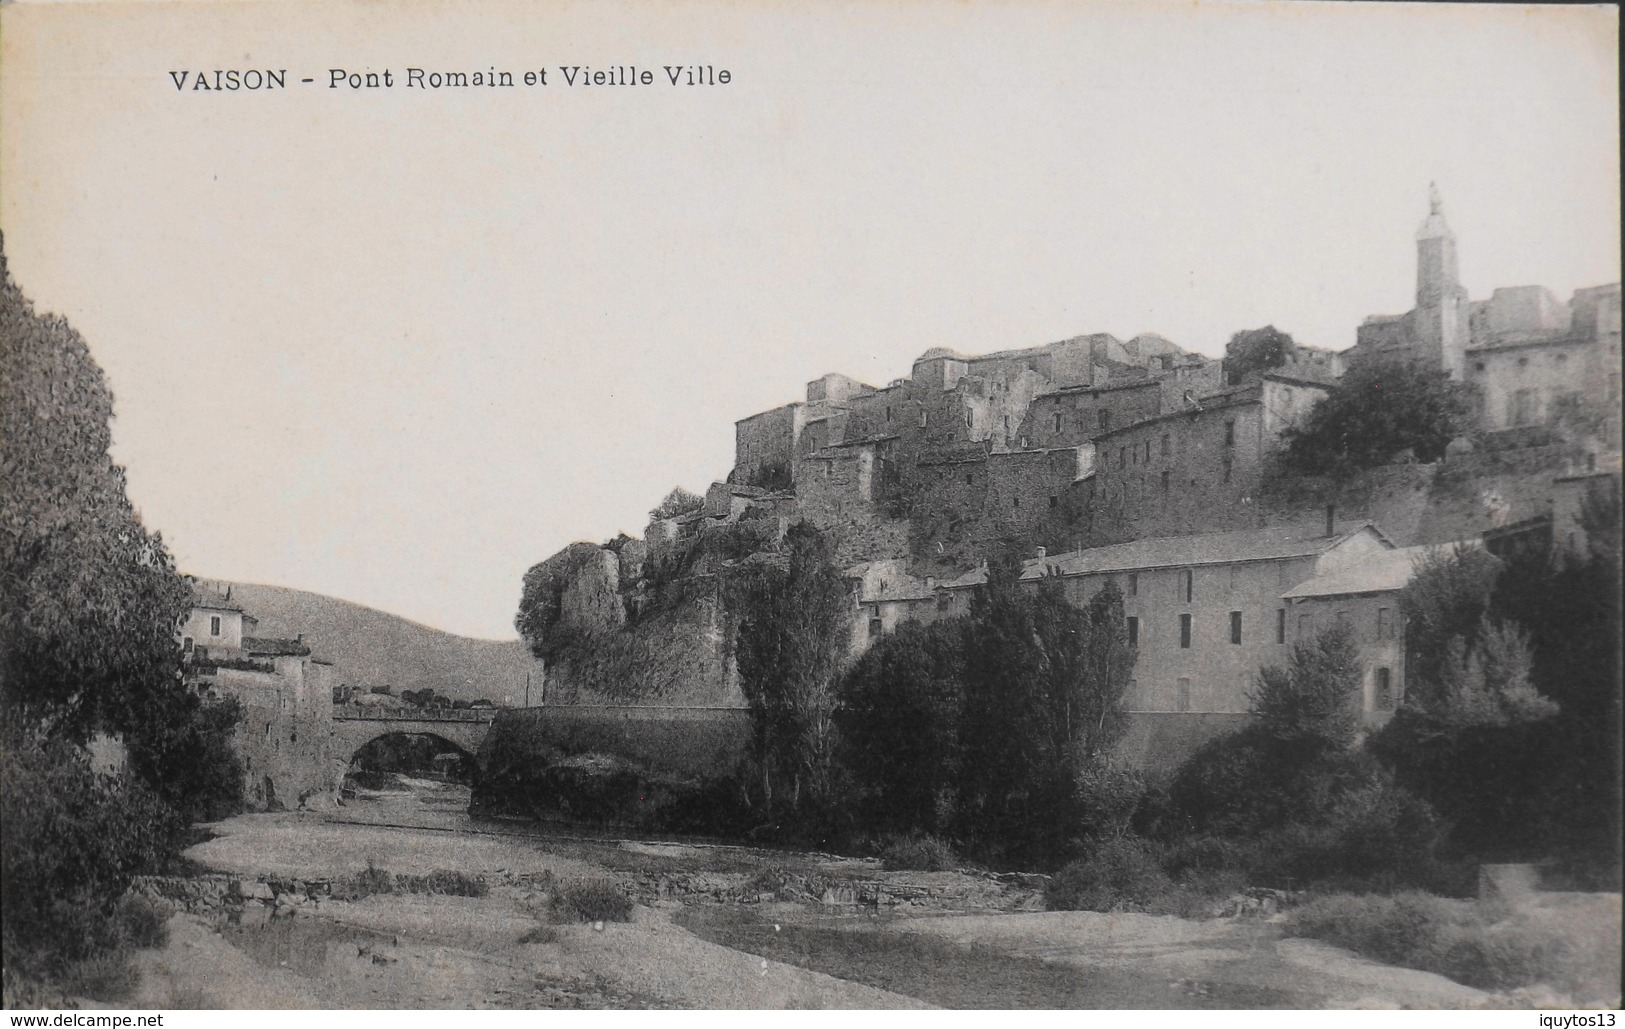 CPA - FRANCE - Vaison-la-Romaine Est Situé Dans Le Dép. De Vaucluse - Pont Romain Et Vieille Ville - Daté 1915 - TBE - Vaison La Romaine